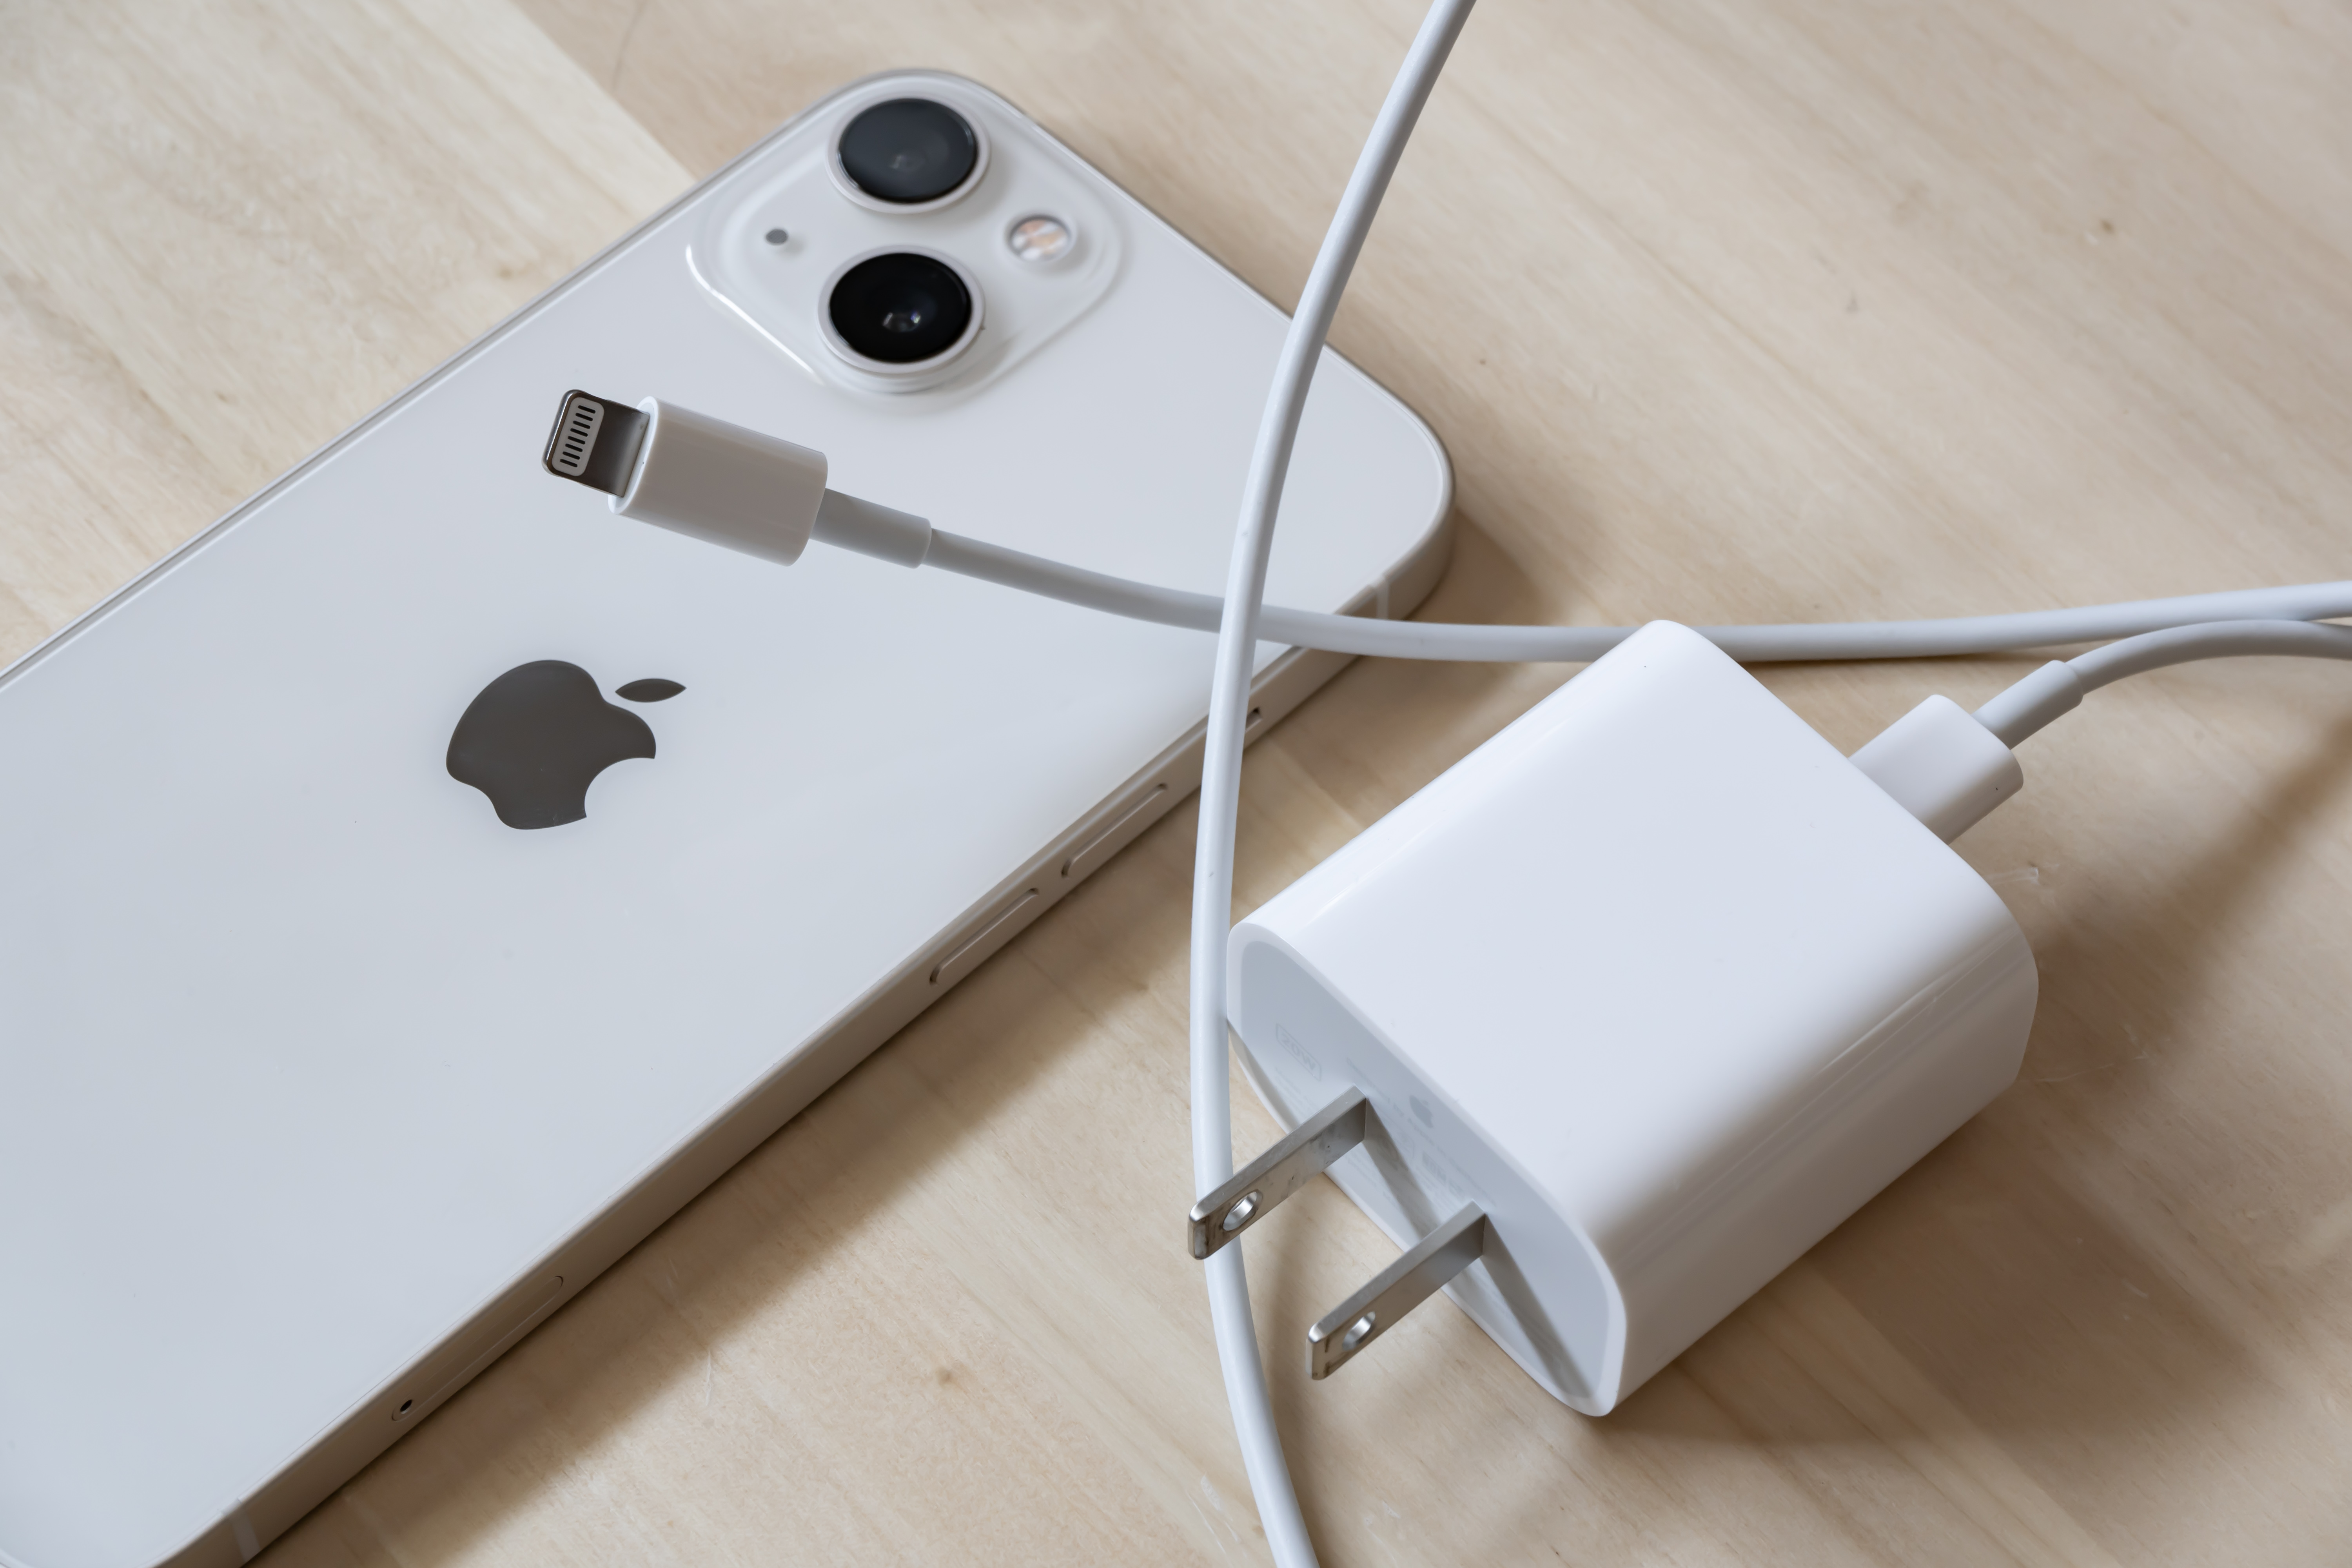 Apple, ilk çift bağlantı noktalı USB-C güç adaptörüne atıfta bulunur